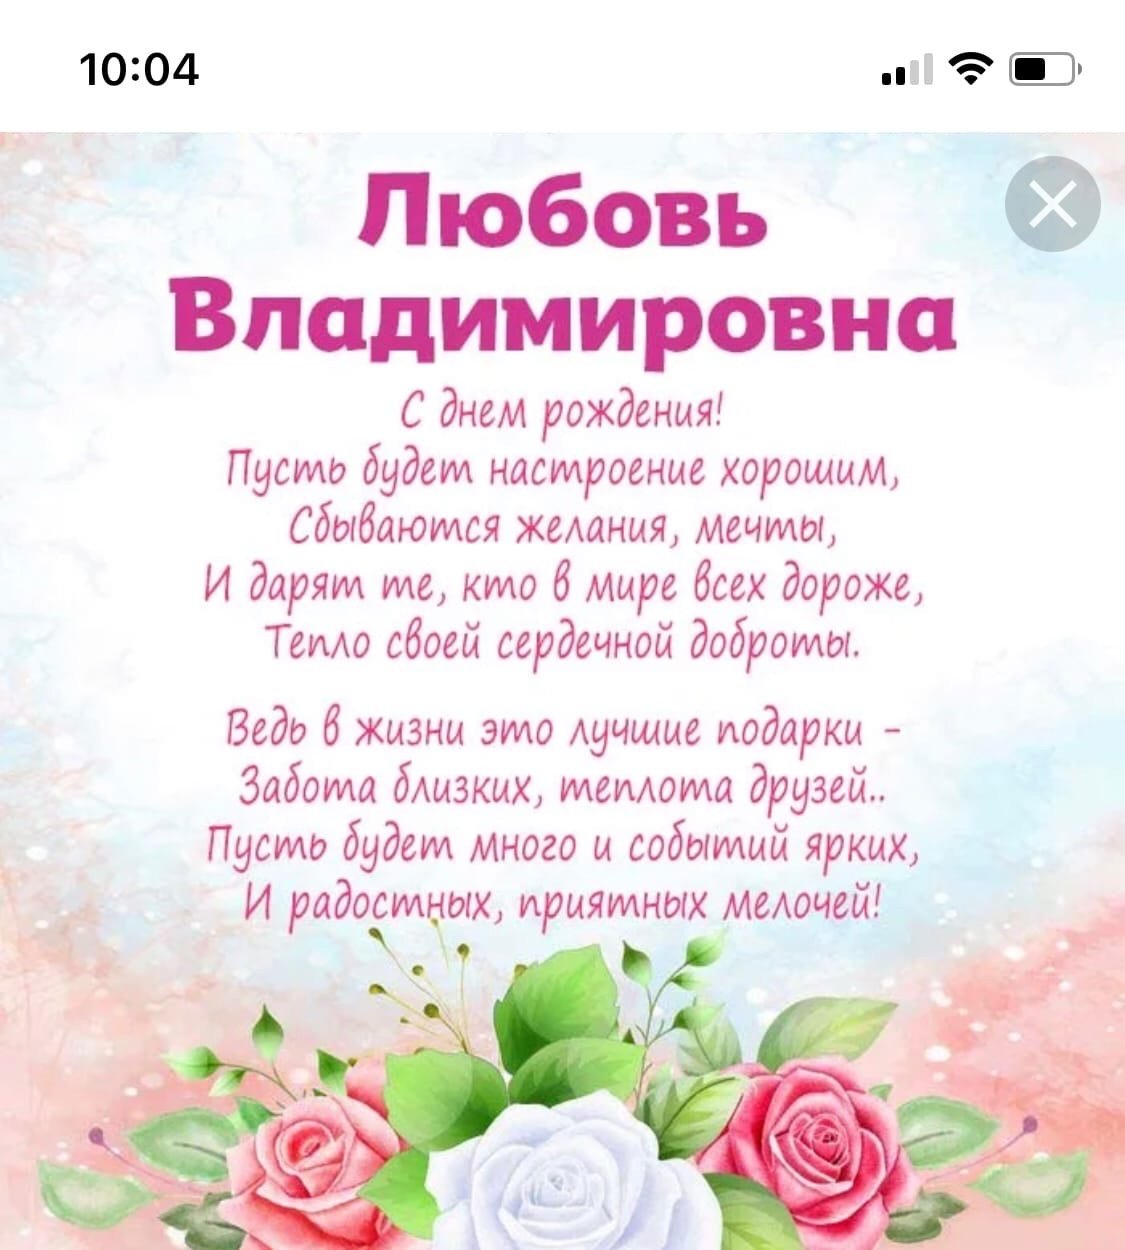 Картинка с днем рождения владимировна. С днём рождения любовь Владимировна. С днем рождения лжбосювь.